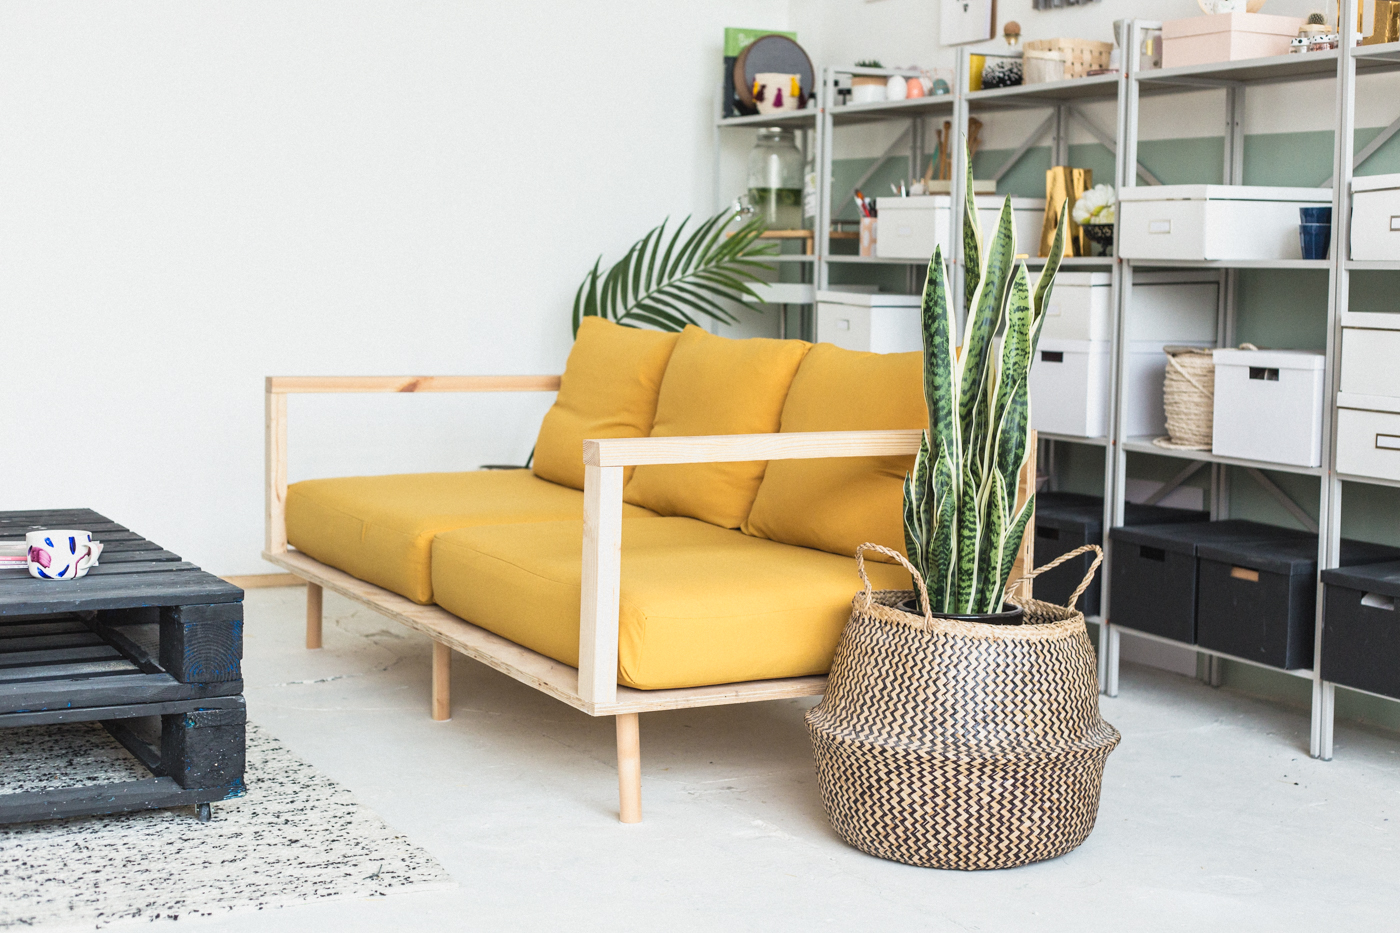 træt af bakke Stjerne Make Yourself Comfortable with this Easy DIY Wooden Studio Sofa | Fall For  DIY